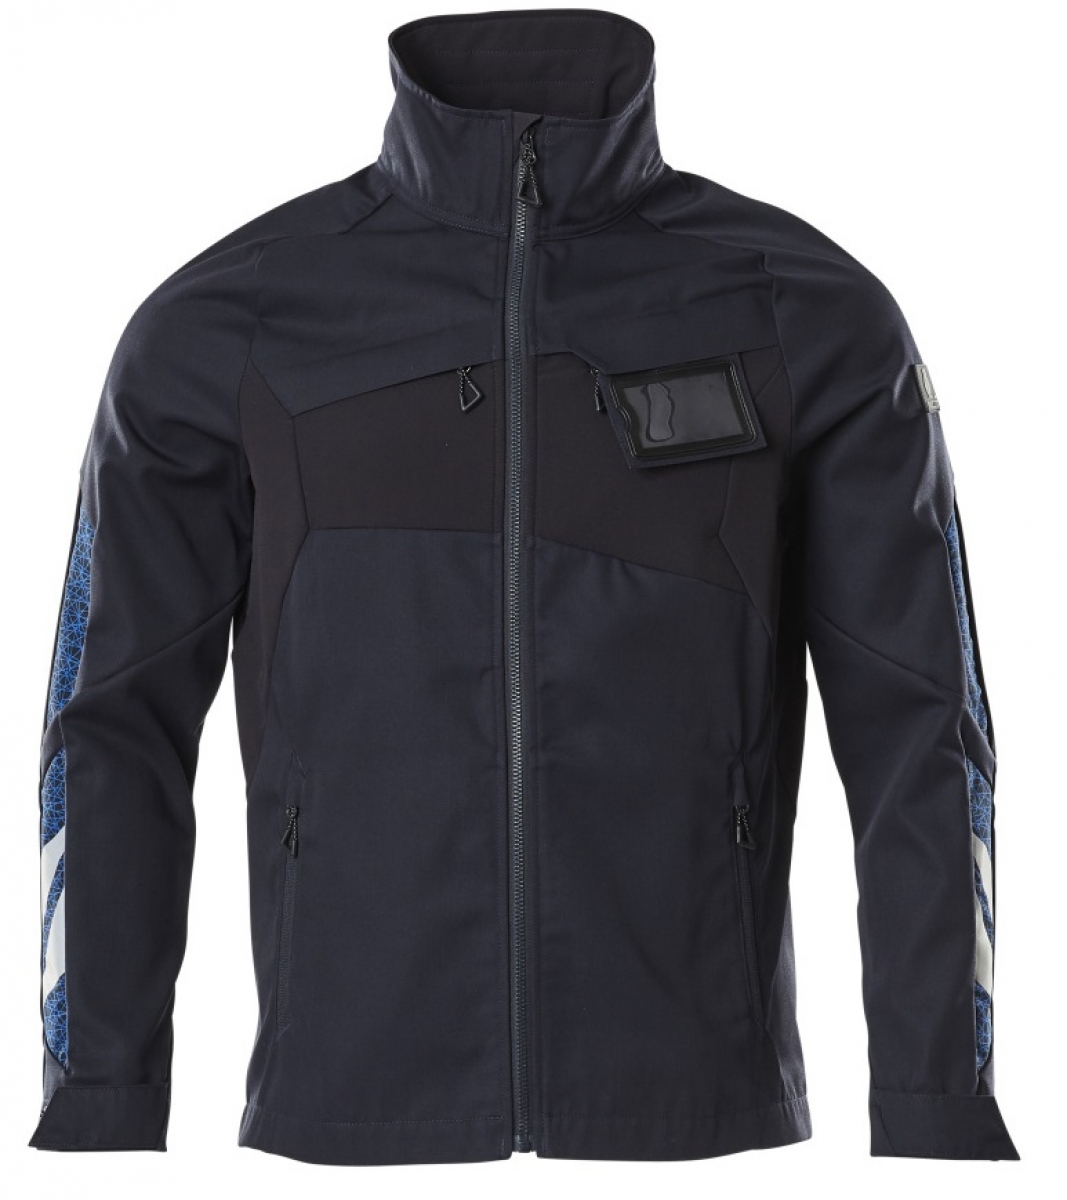 MASCOT-Workwear, Klteschutz, Softshell-Arbeitsjacke, 270 g/m, schwarzblau